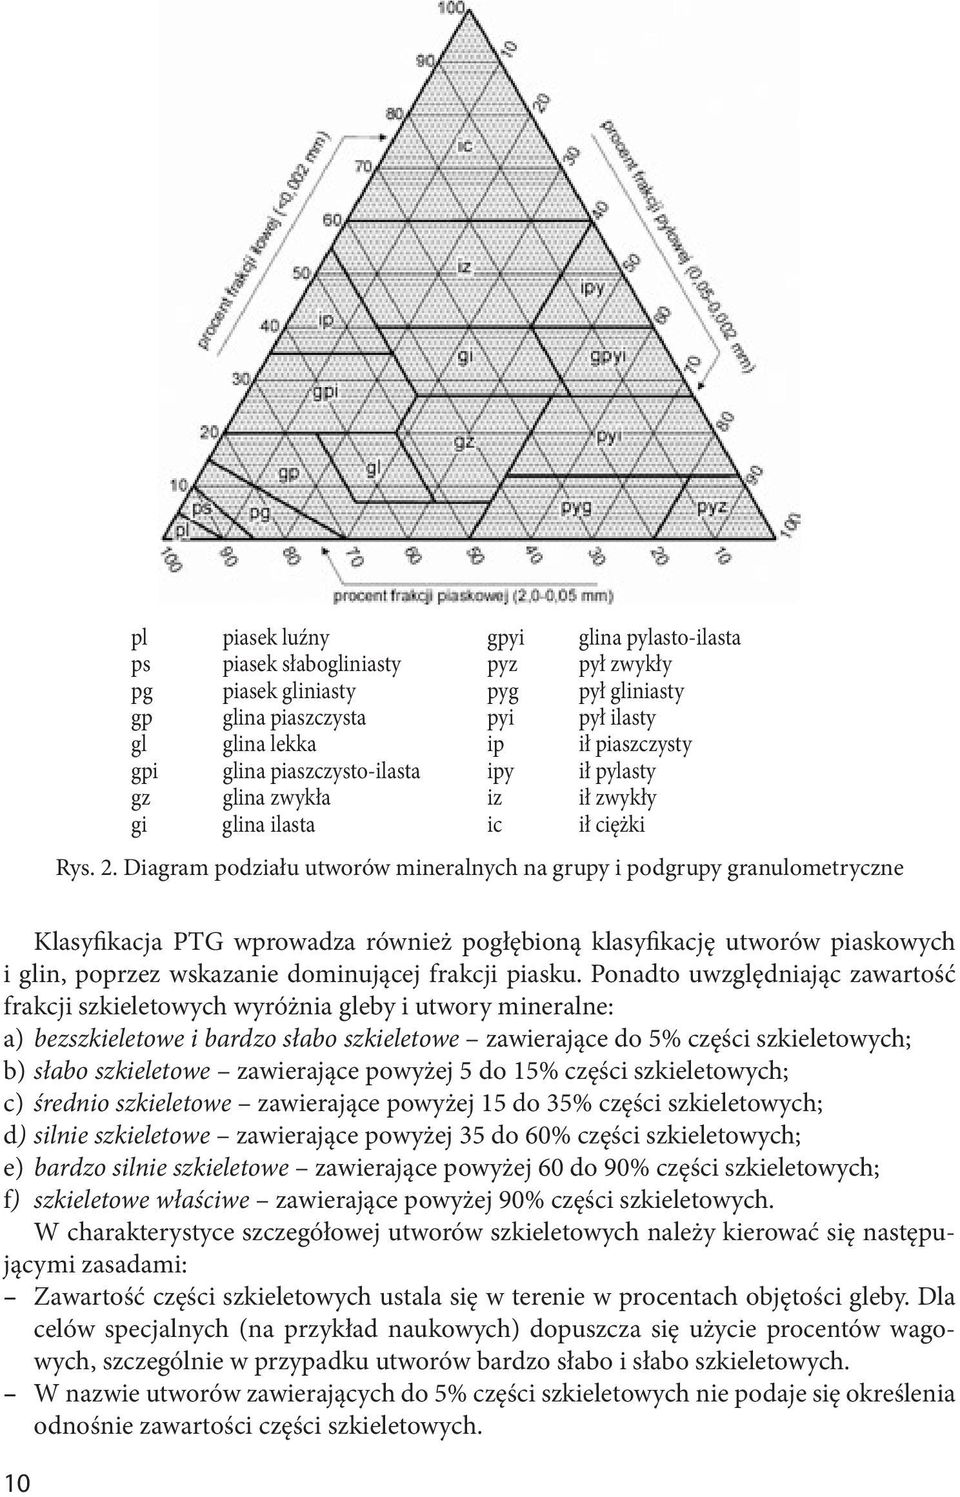 Diagram podziału utworów mineralnych na grupy i podgrupy granulometryczne Klasyfikacja PTG wprowadza również pogłębioną klasyfikację utworów piaskowych i glin, poprzez wskazanie dominującej frakcji